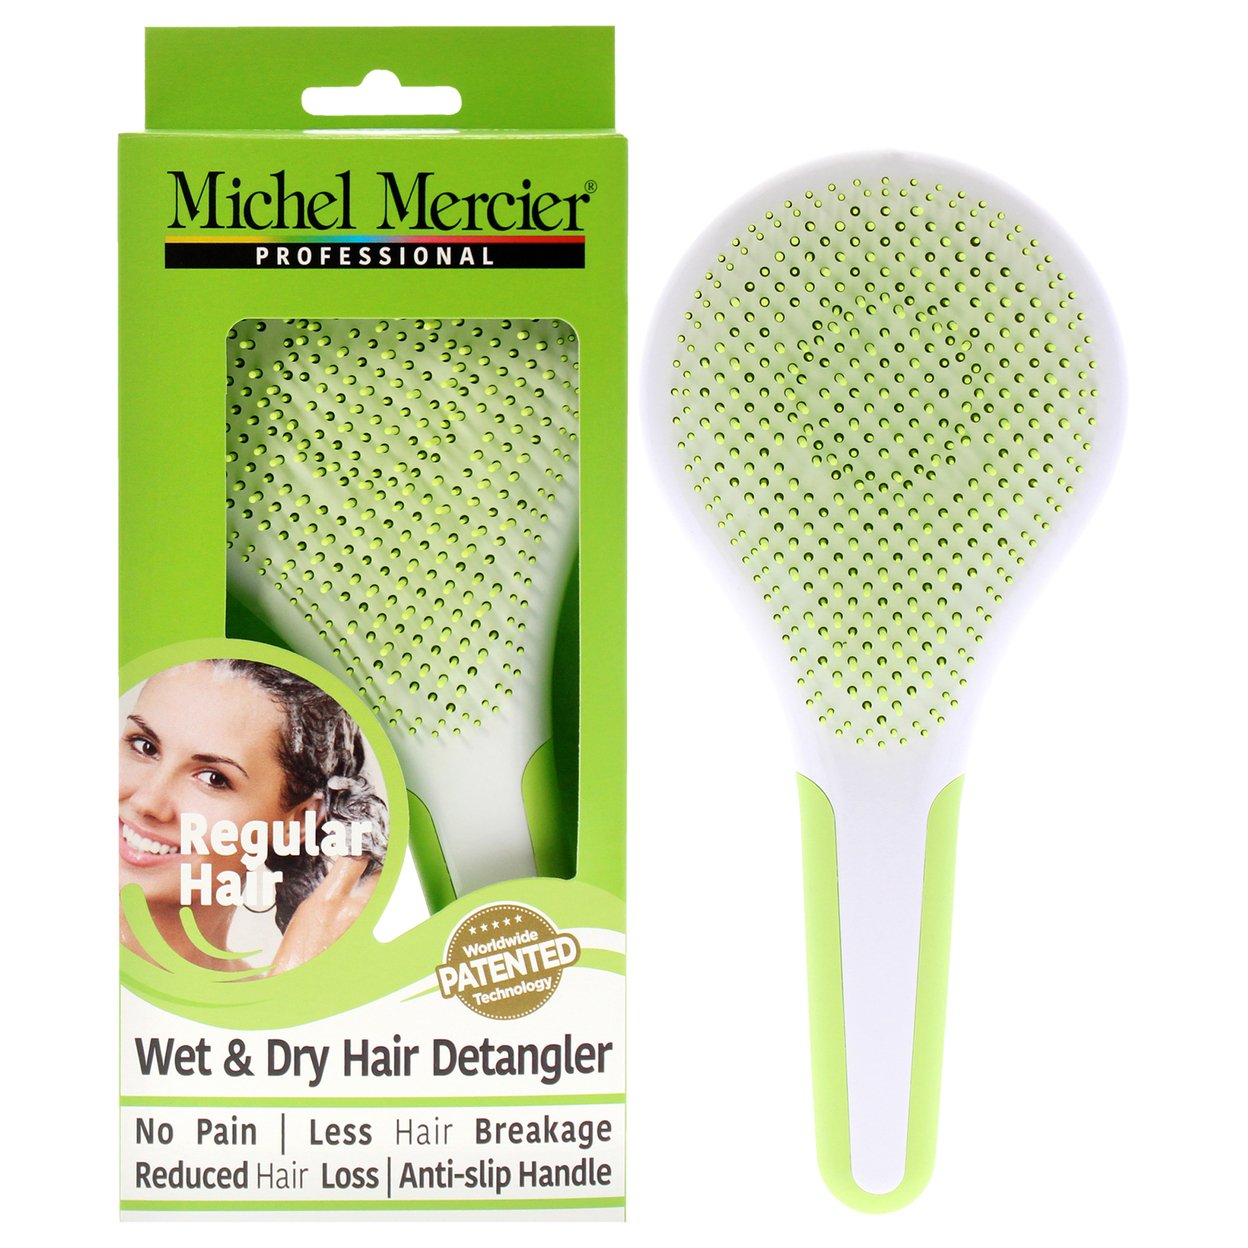 Michel Mercier Wet And Dry Hair Detangler Regular Hair - Green-White Hair Brush 1 Pc